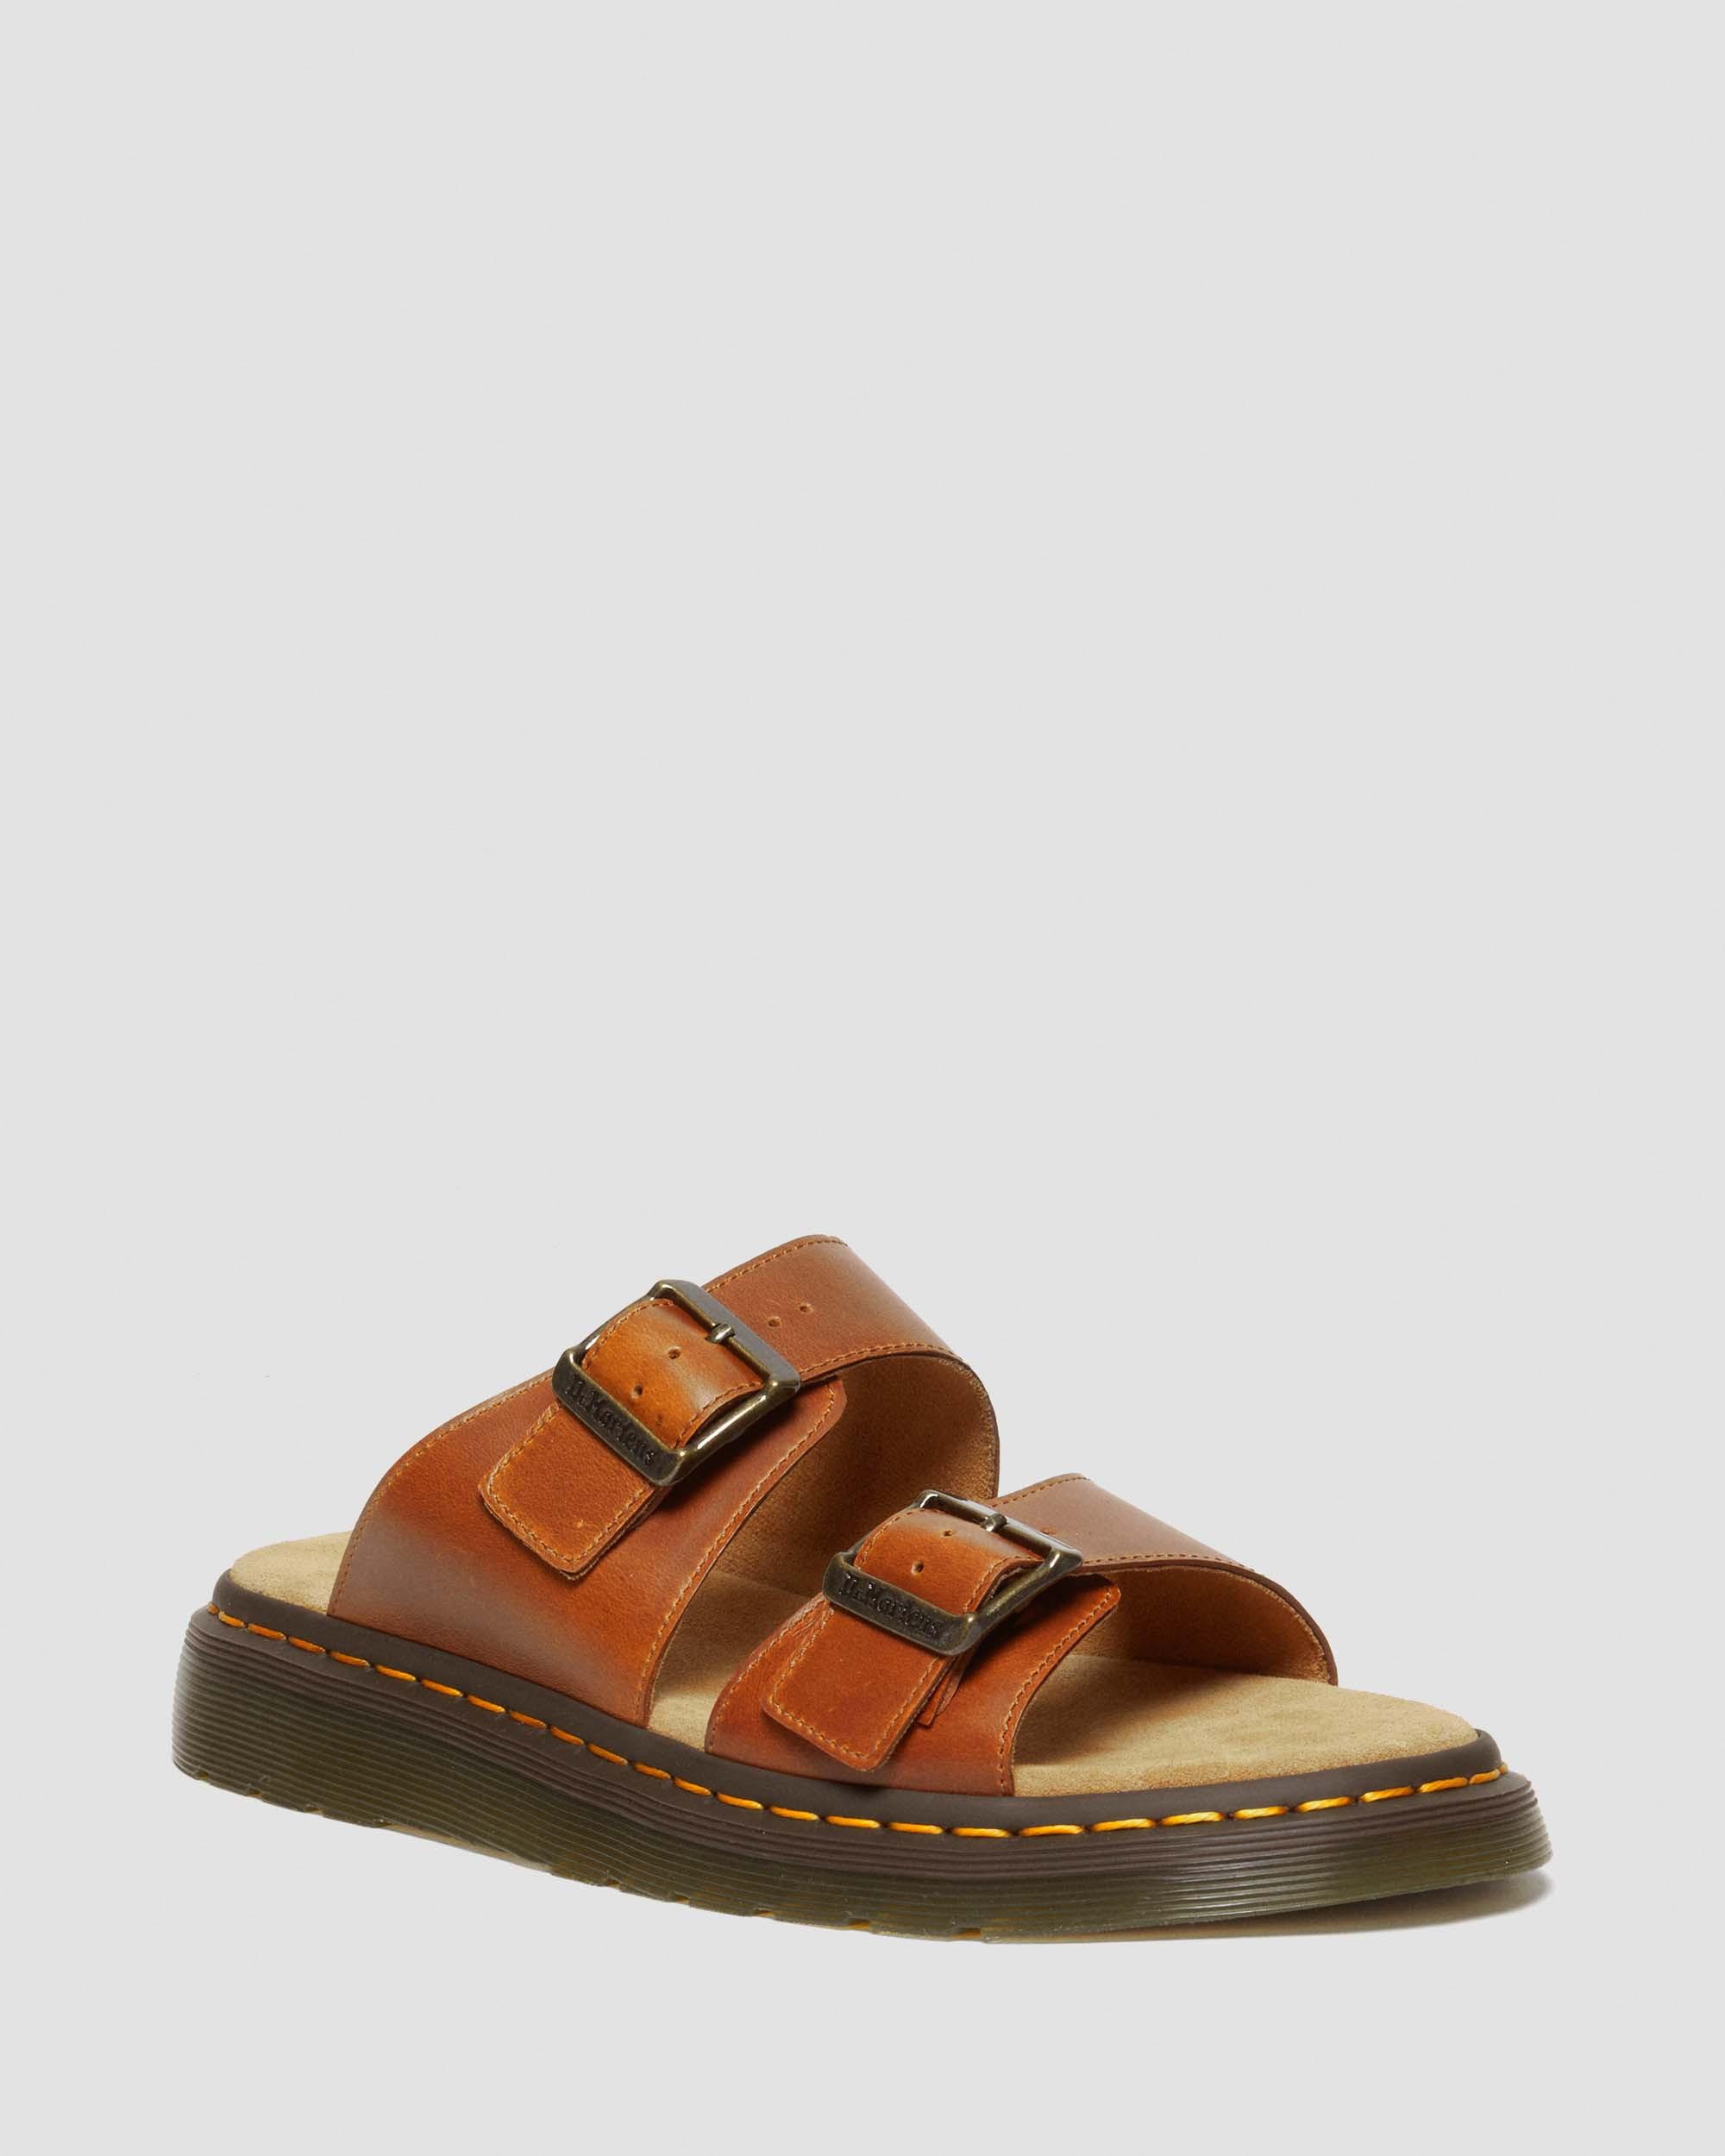 Josef Leather Buckle Slide Sandals